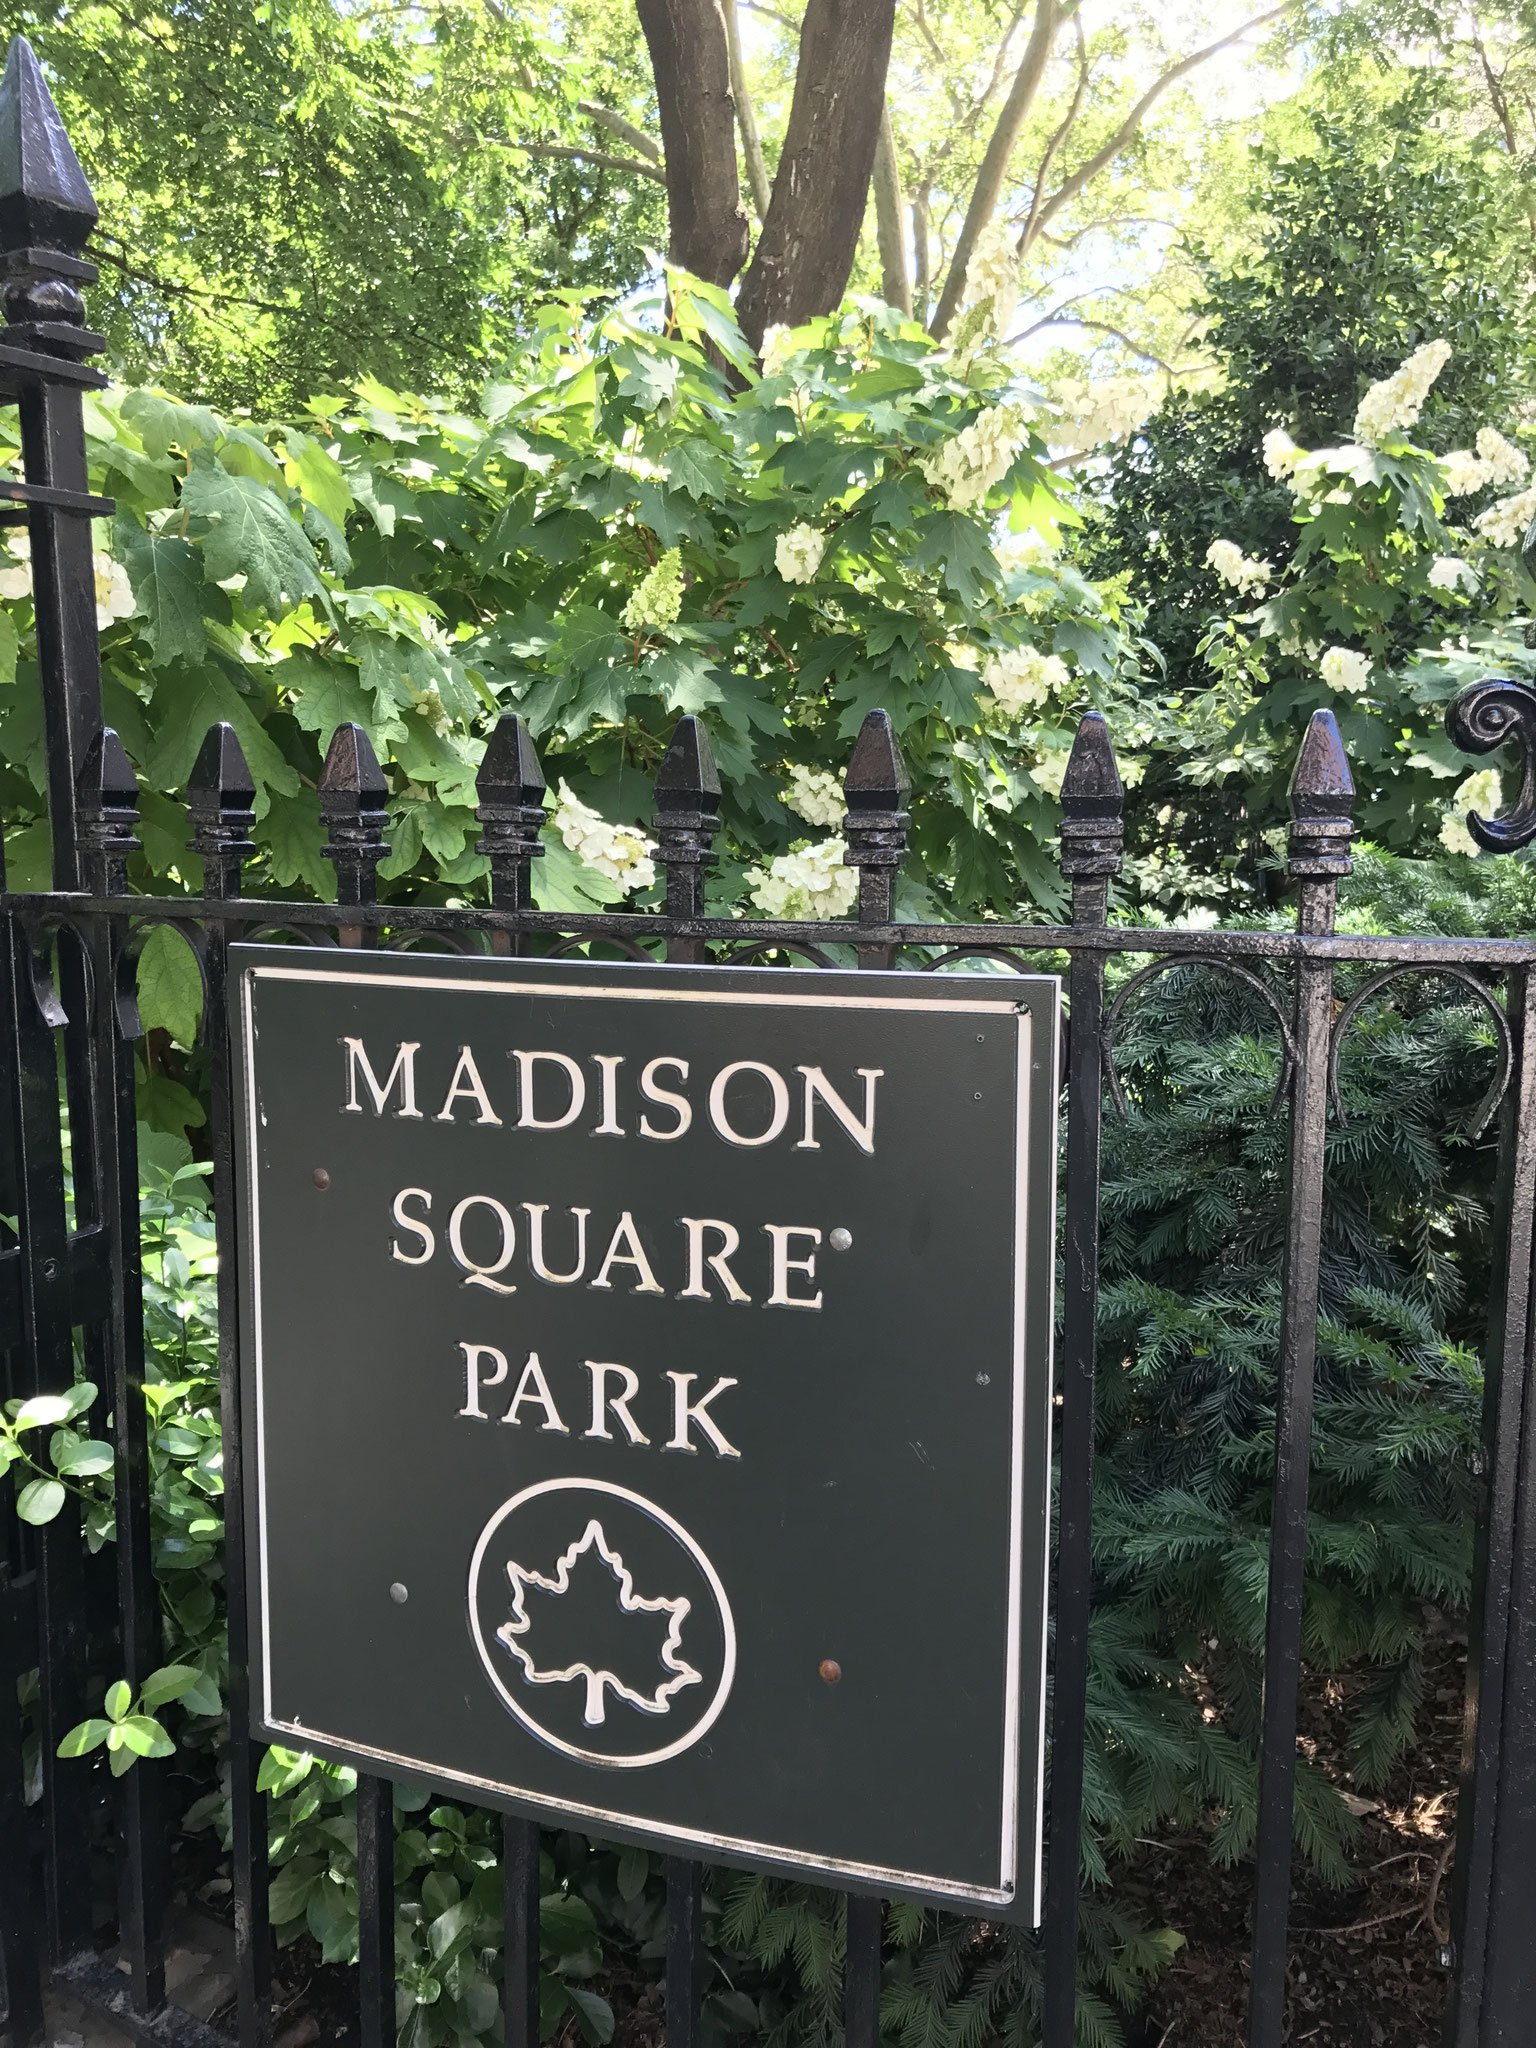 erschöpft angelangt im Madison Square Park - ideal zum Erholen, Kraft tanken und die Riesen um sich wirken zu lassen 